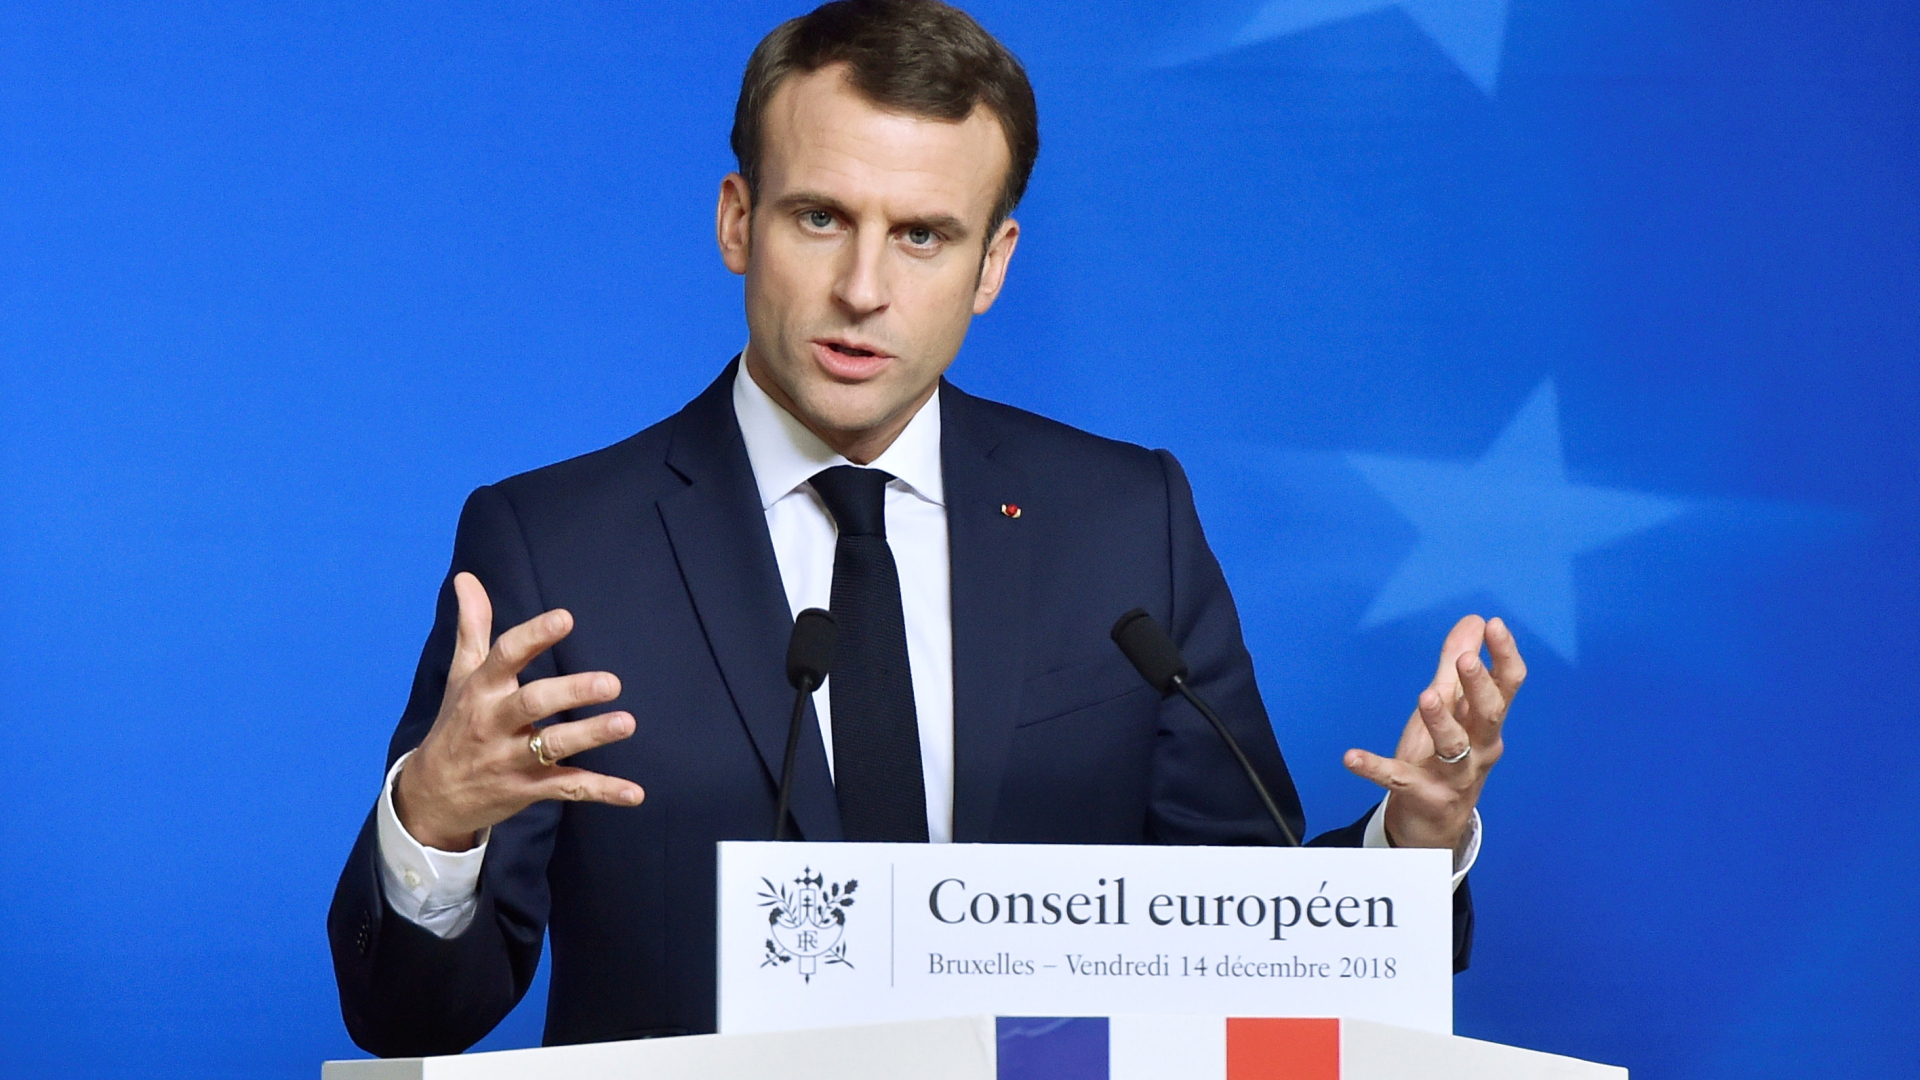 Europäischer Rat: Pressekonferenz des französischen Präsidenten Macron